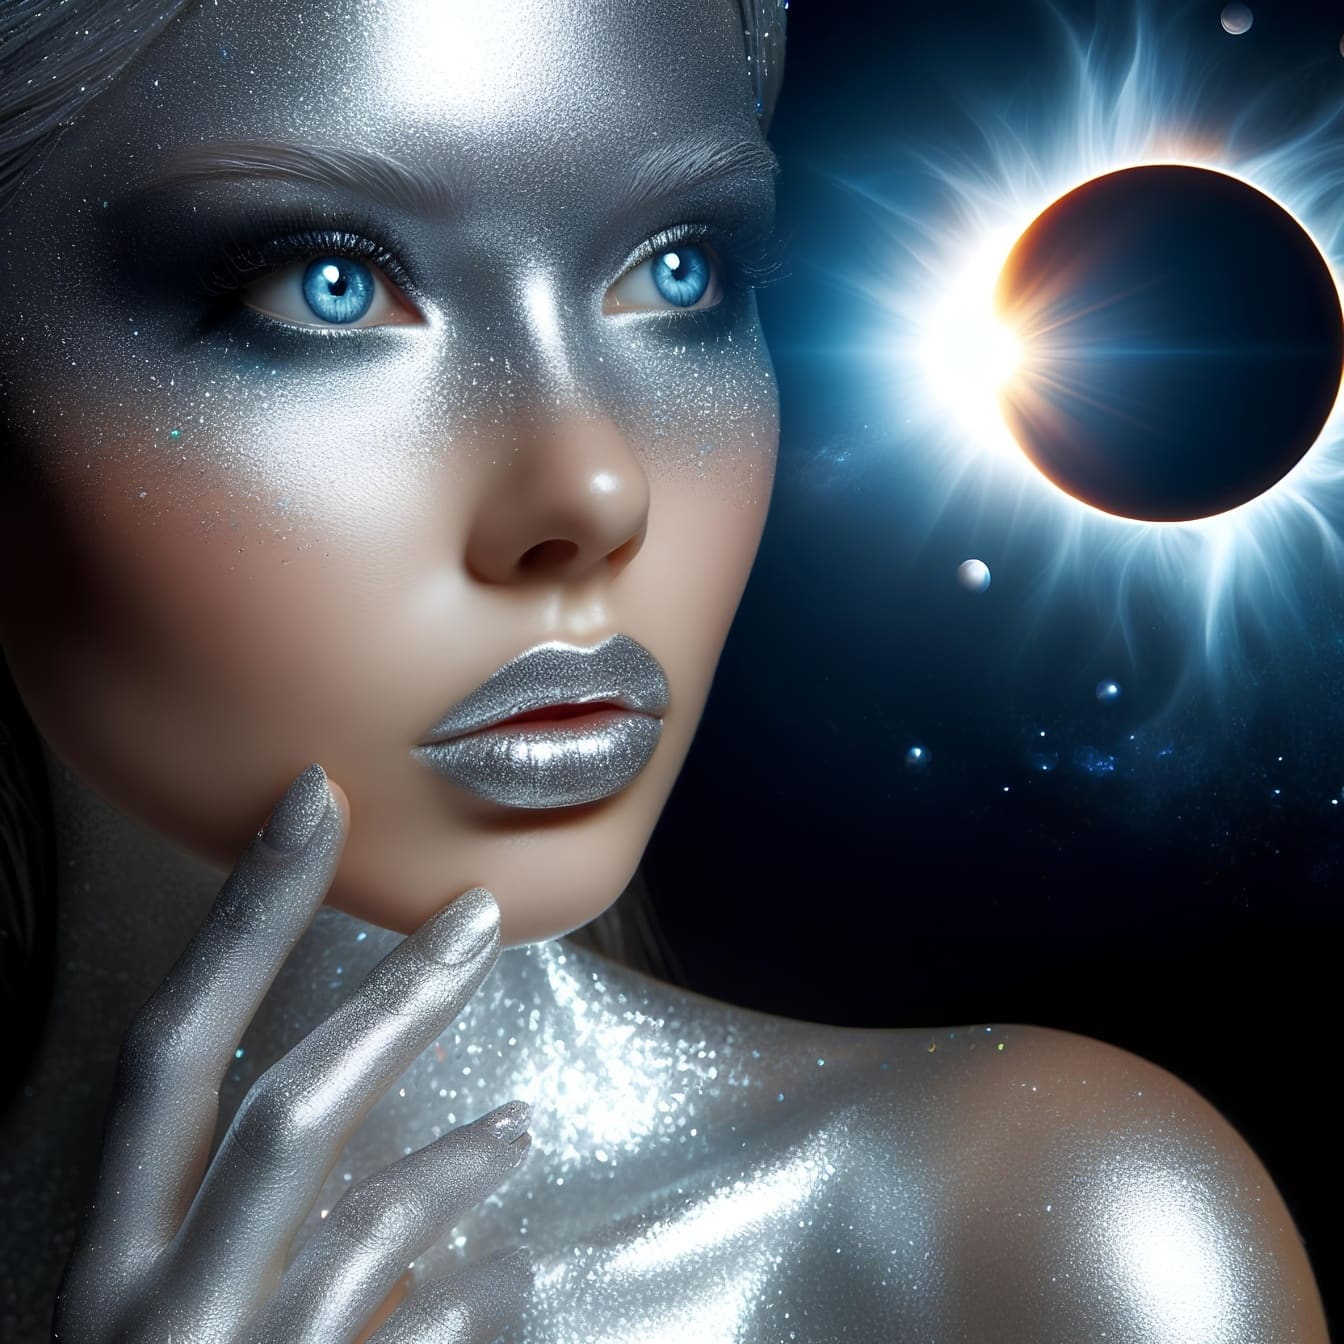 Grafica digitale di una donna con trucco glitterato e occhi azzurri, rappresentazione della bellezza astrale